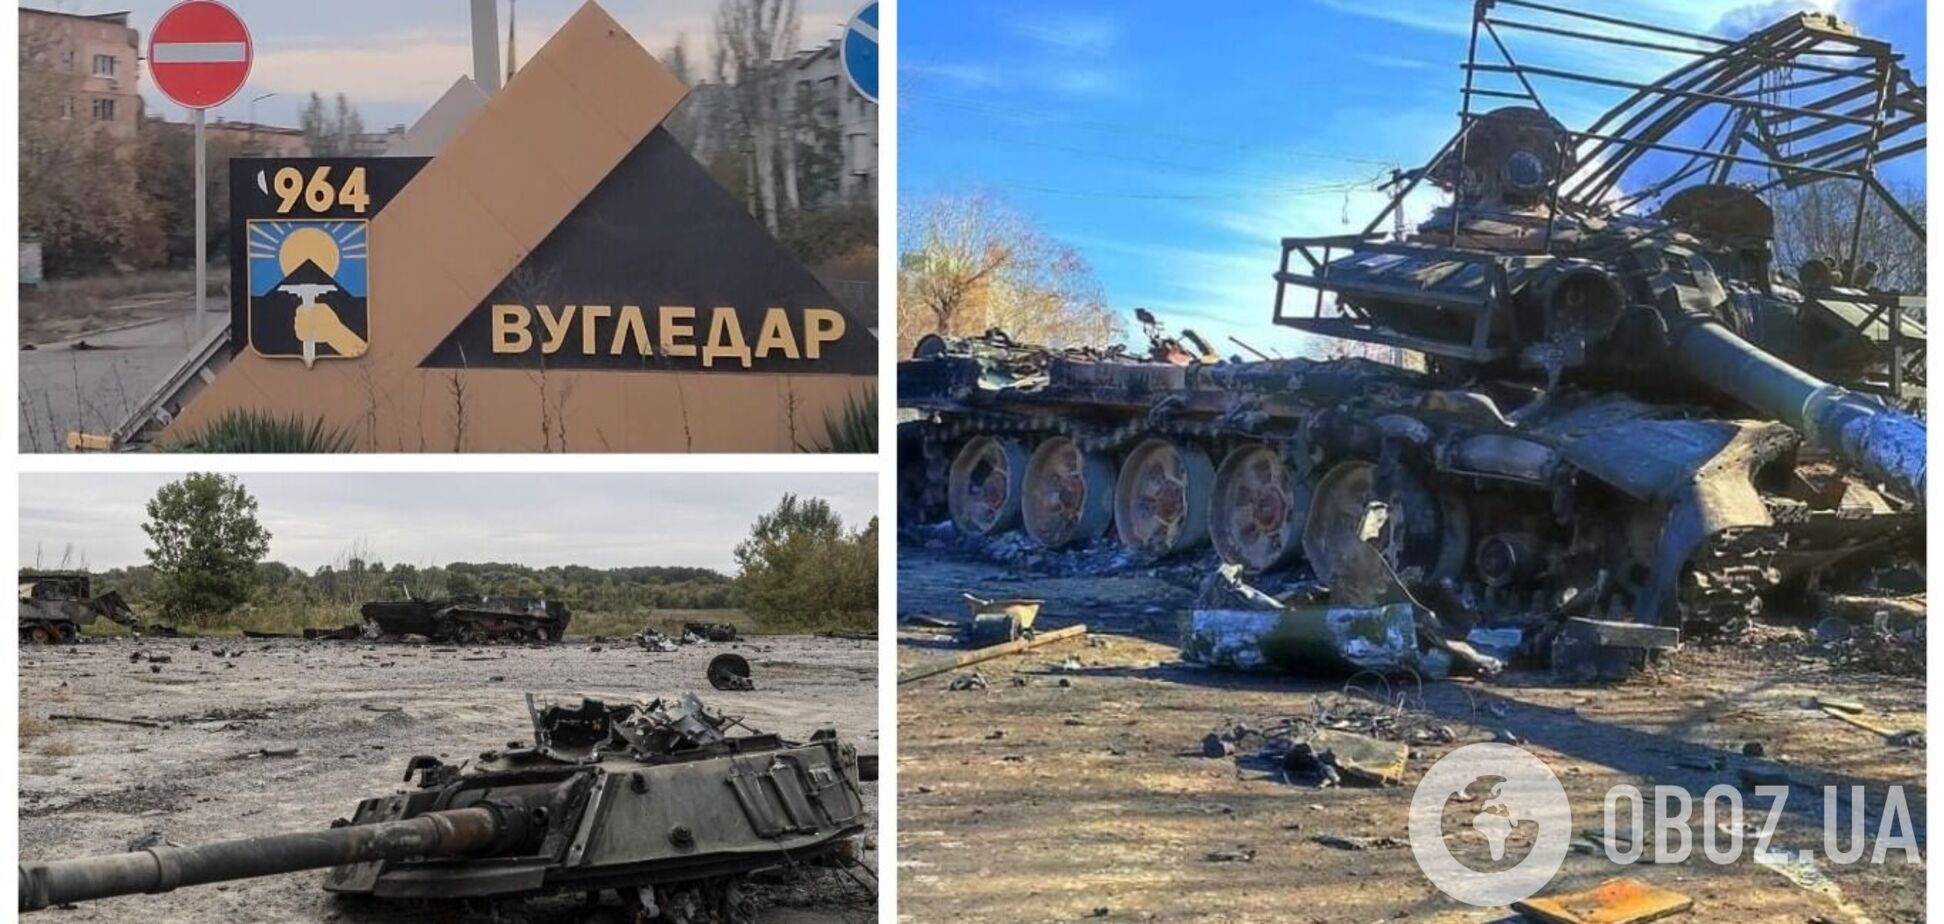 Россия потеряла под Угледаром 71 единицу техники за последние две недели – WarSpotting